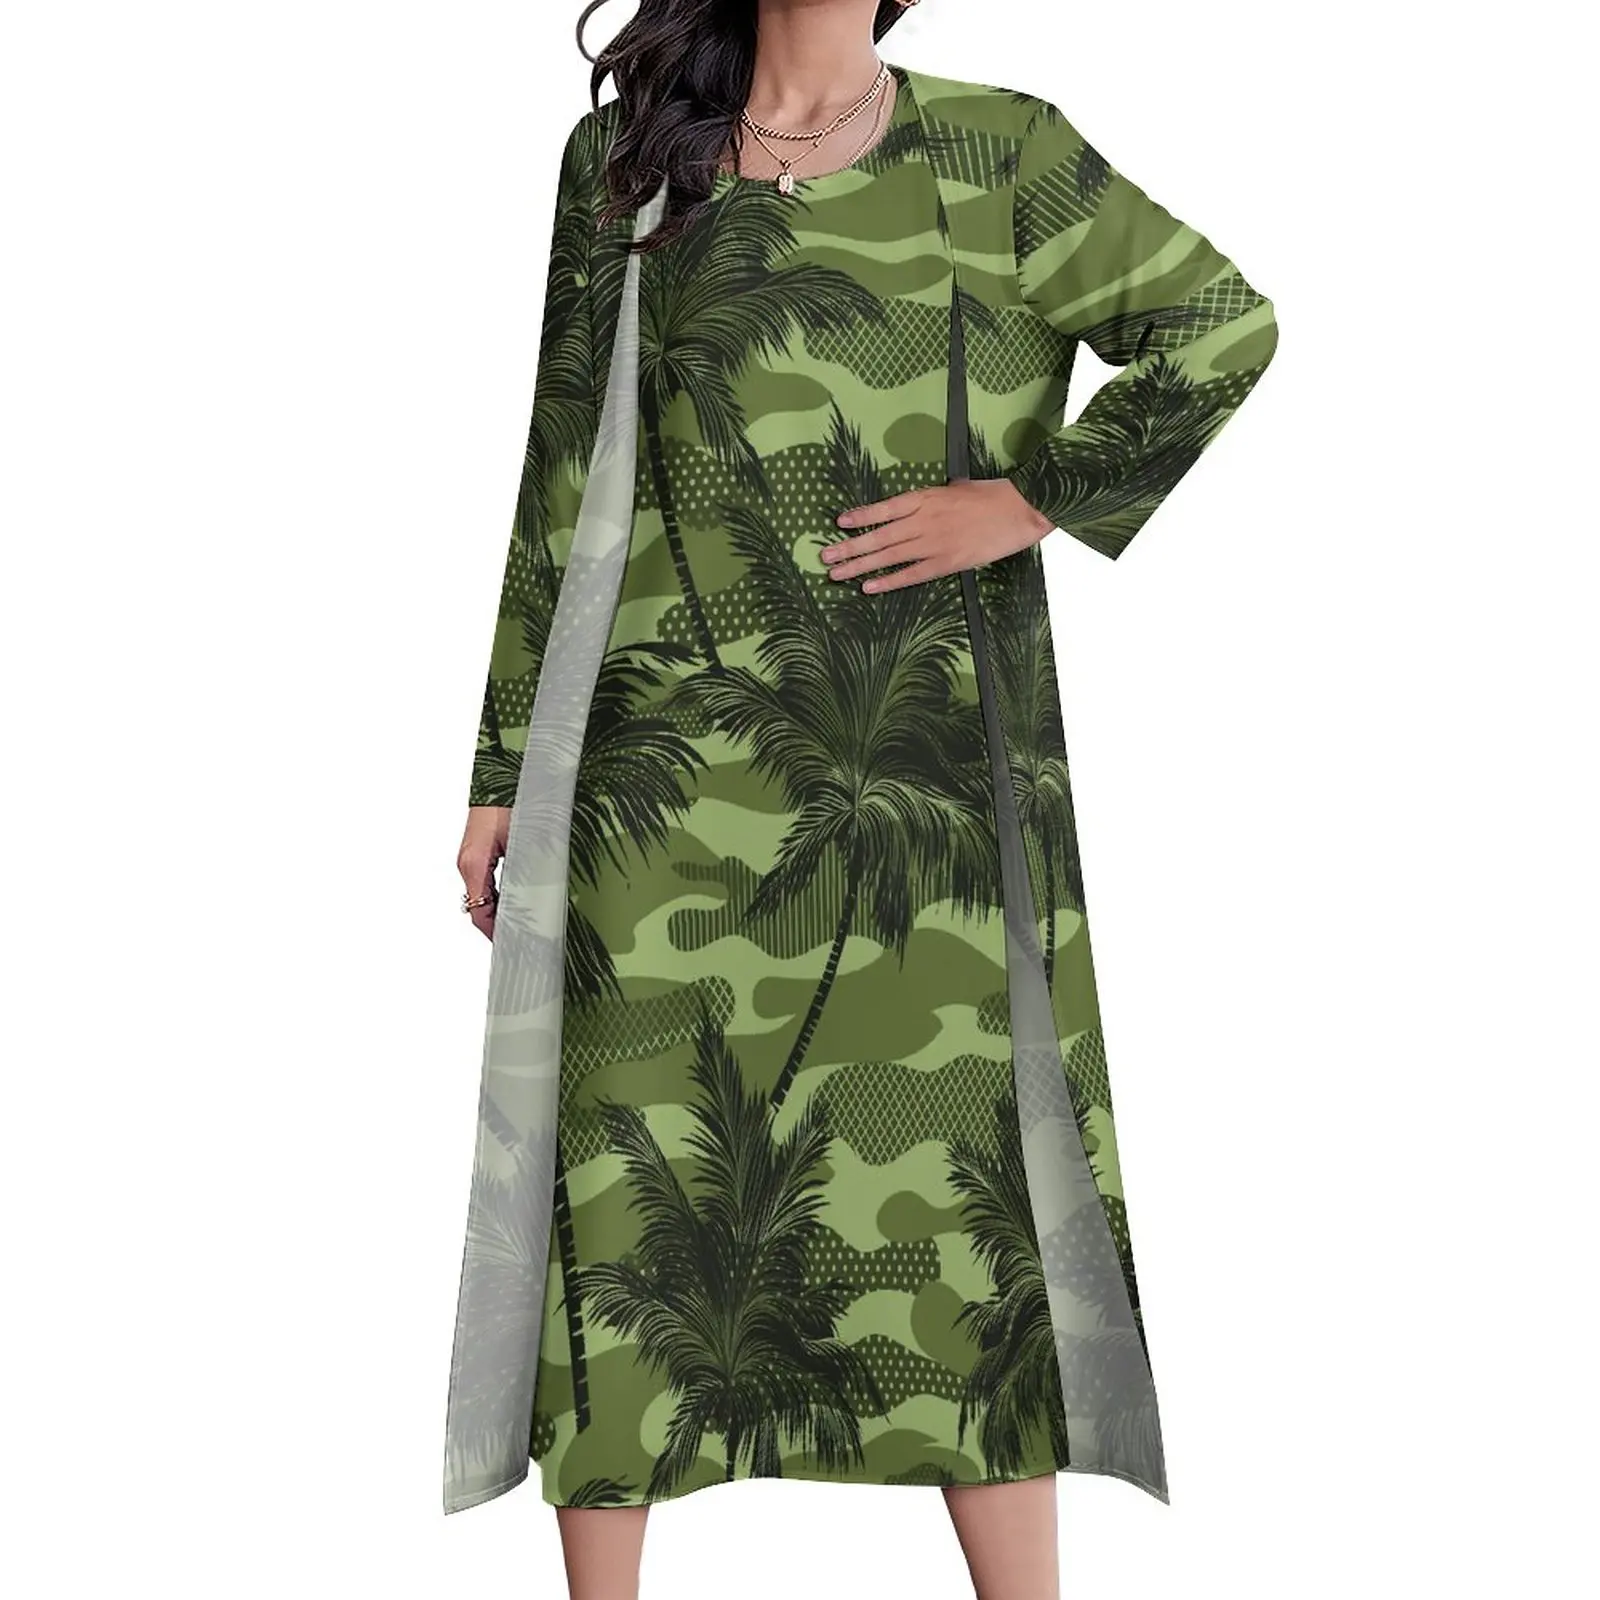 

Green Camo Print Dress Autumn Palm Tree Print Streetwear Casual Long Dresses Female Custom Night Club Maxi Dress Big Size 5XL